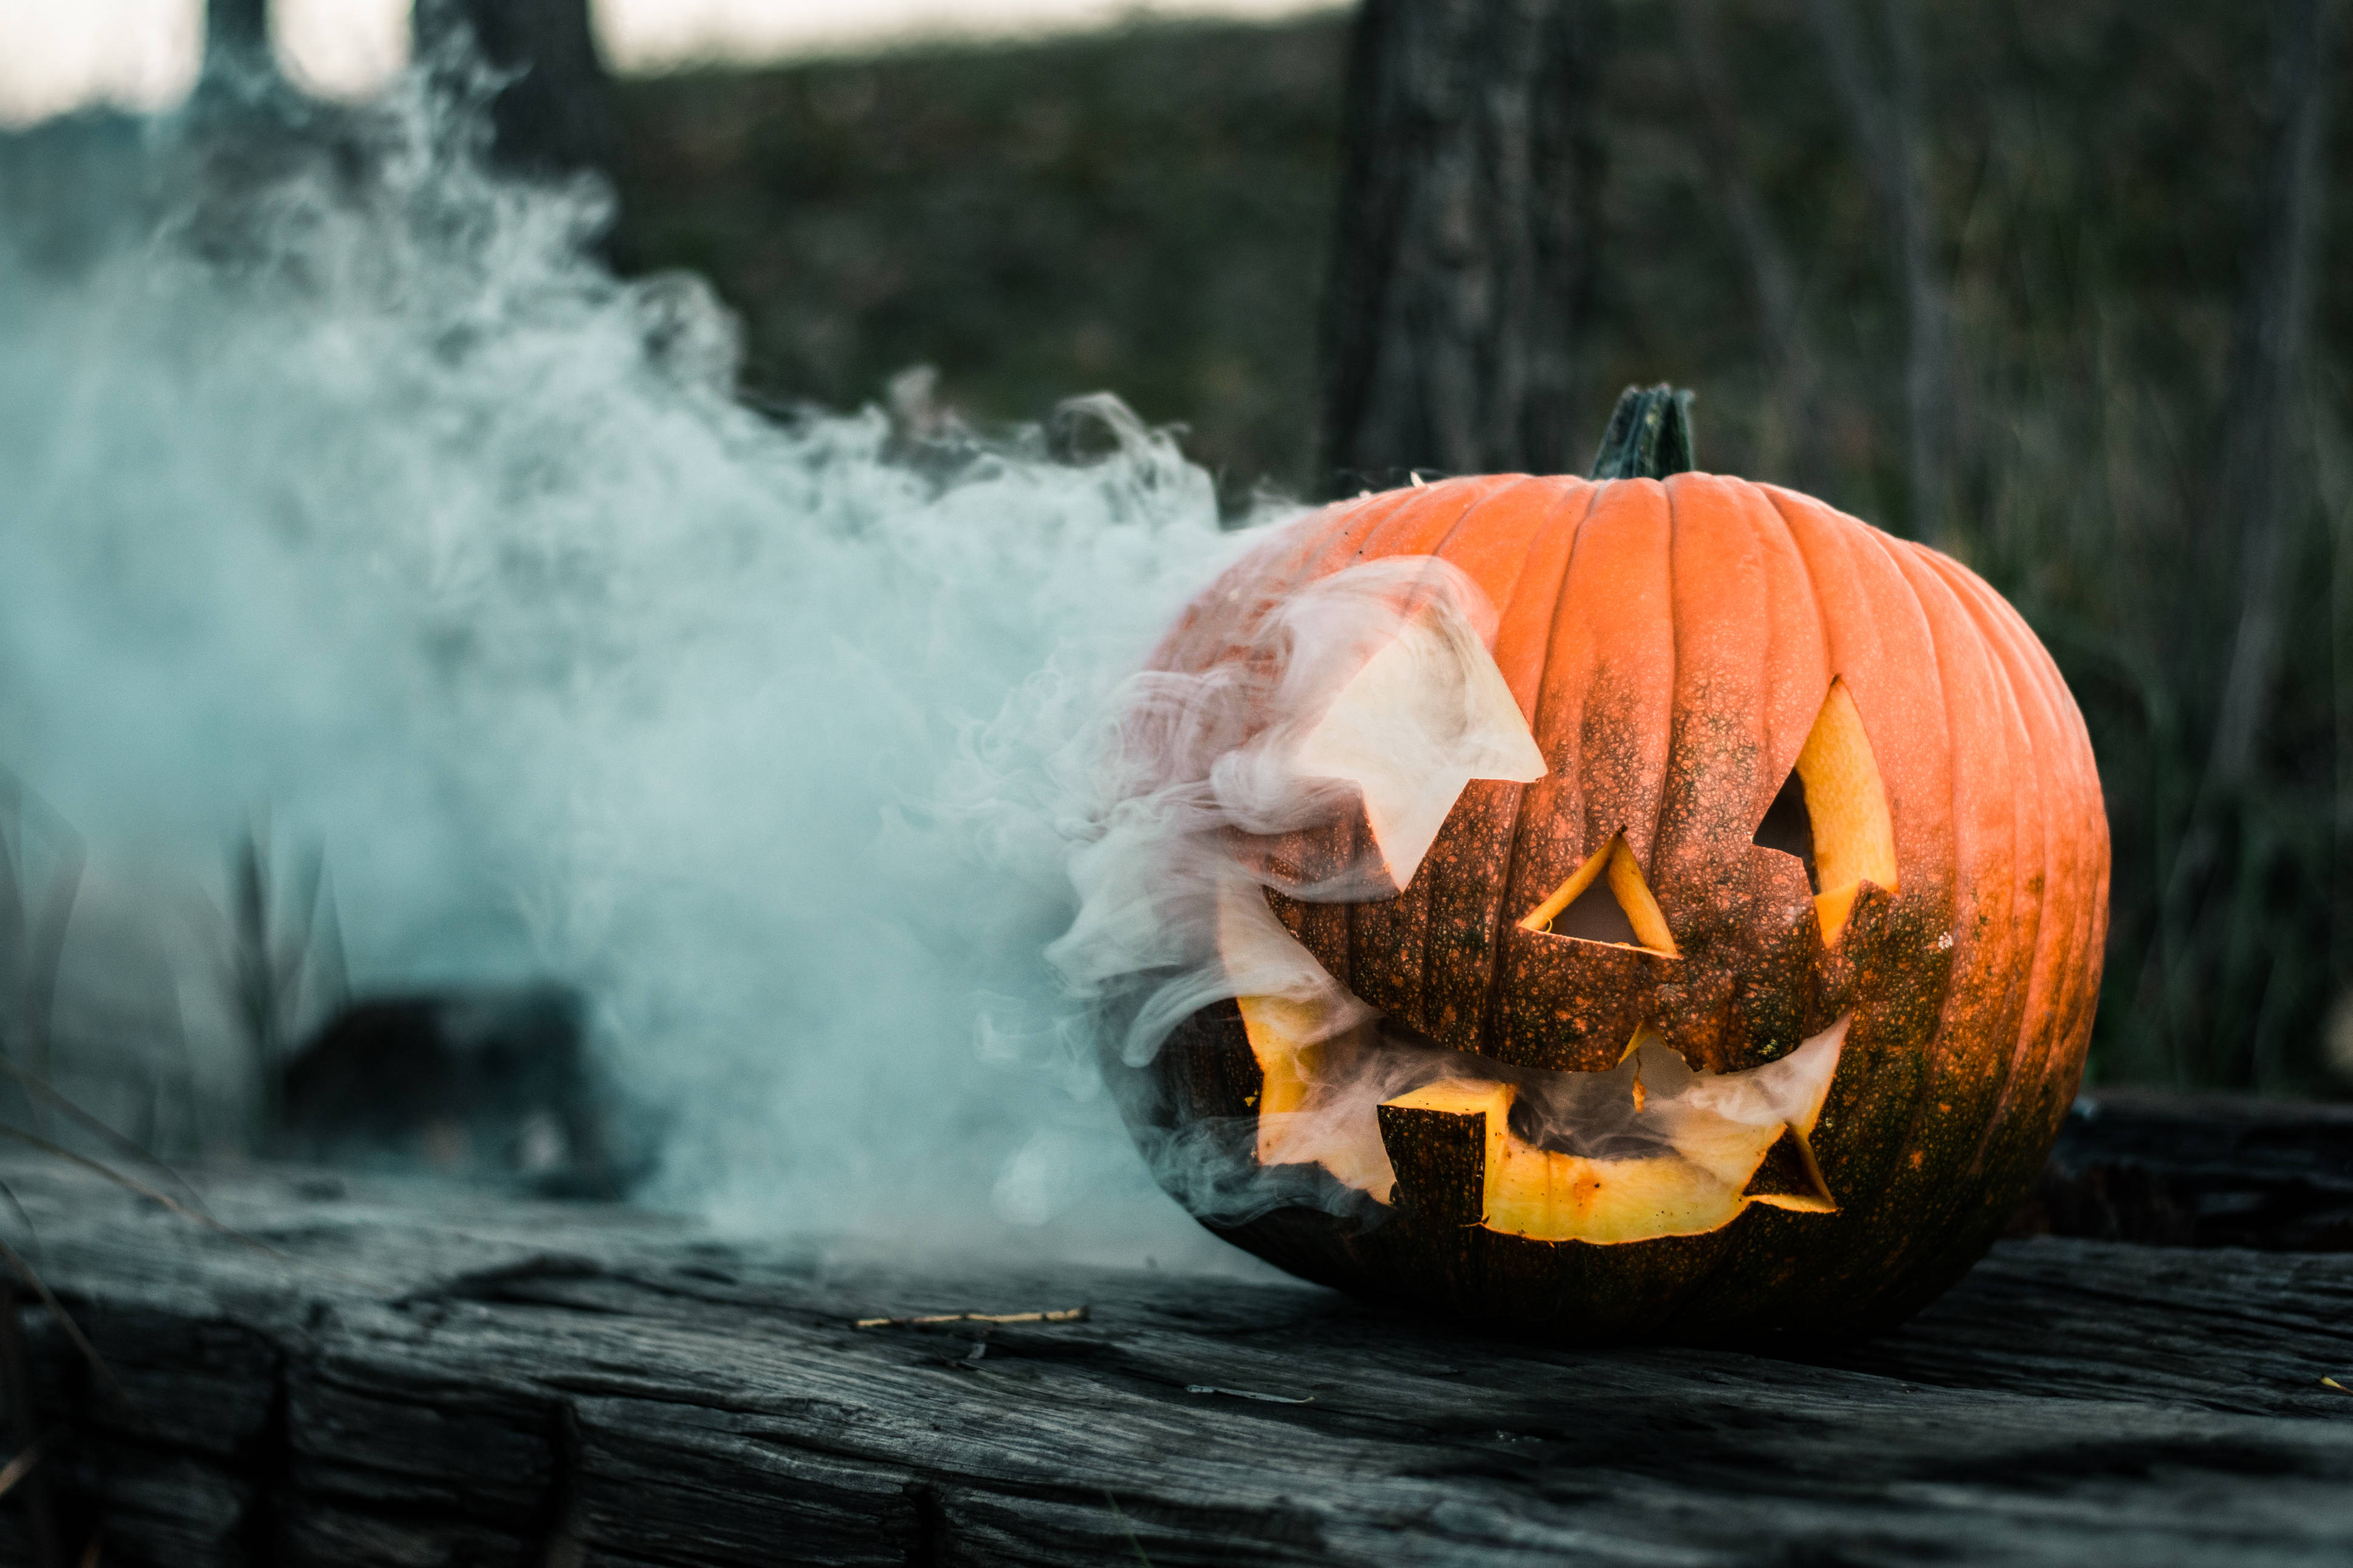 A pumpkin with smoke coming out of it - Halloween, Halloween desktop, pumpkin